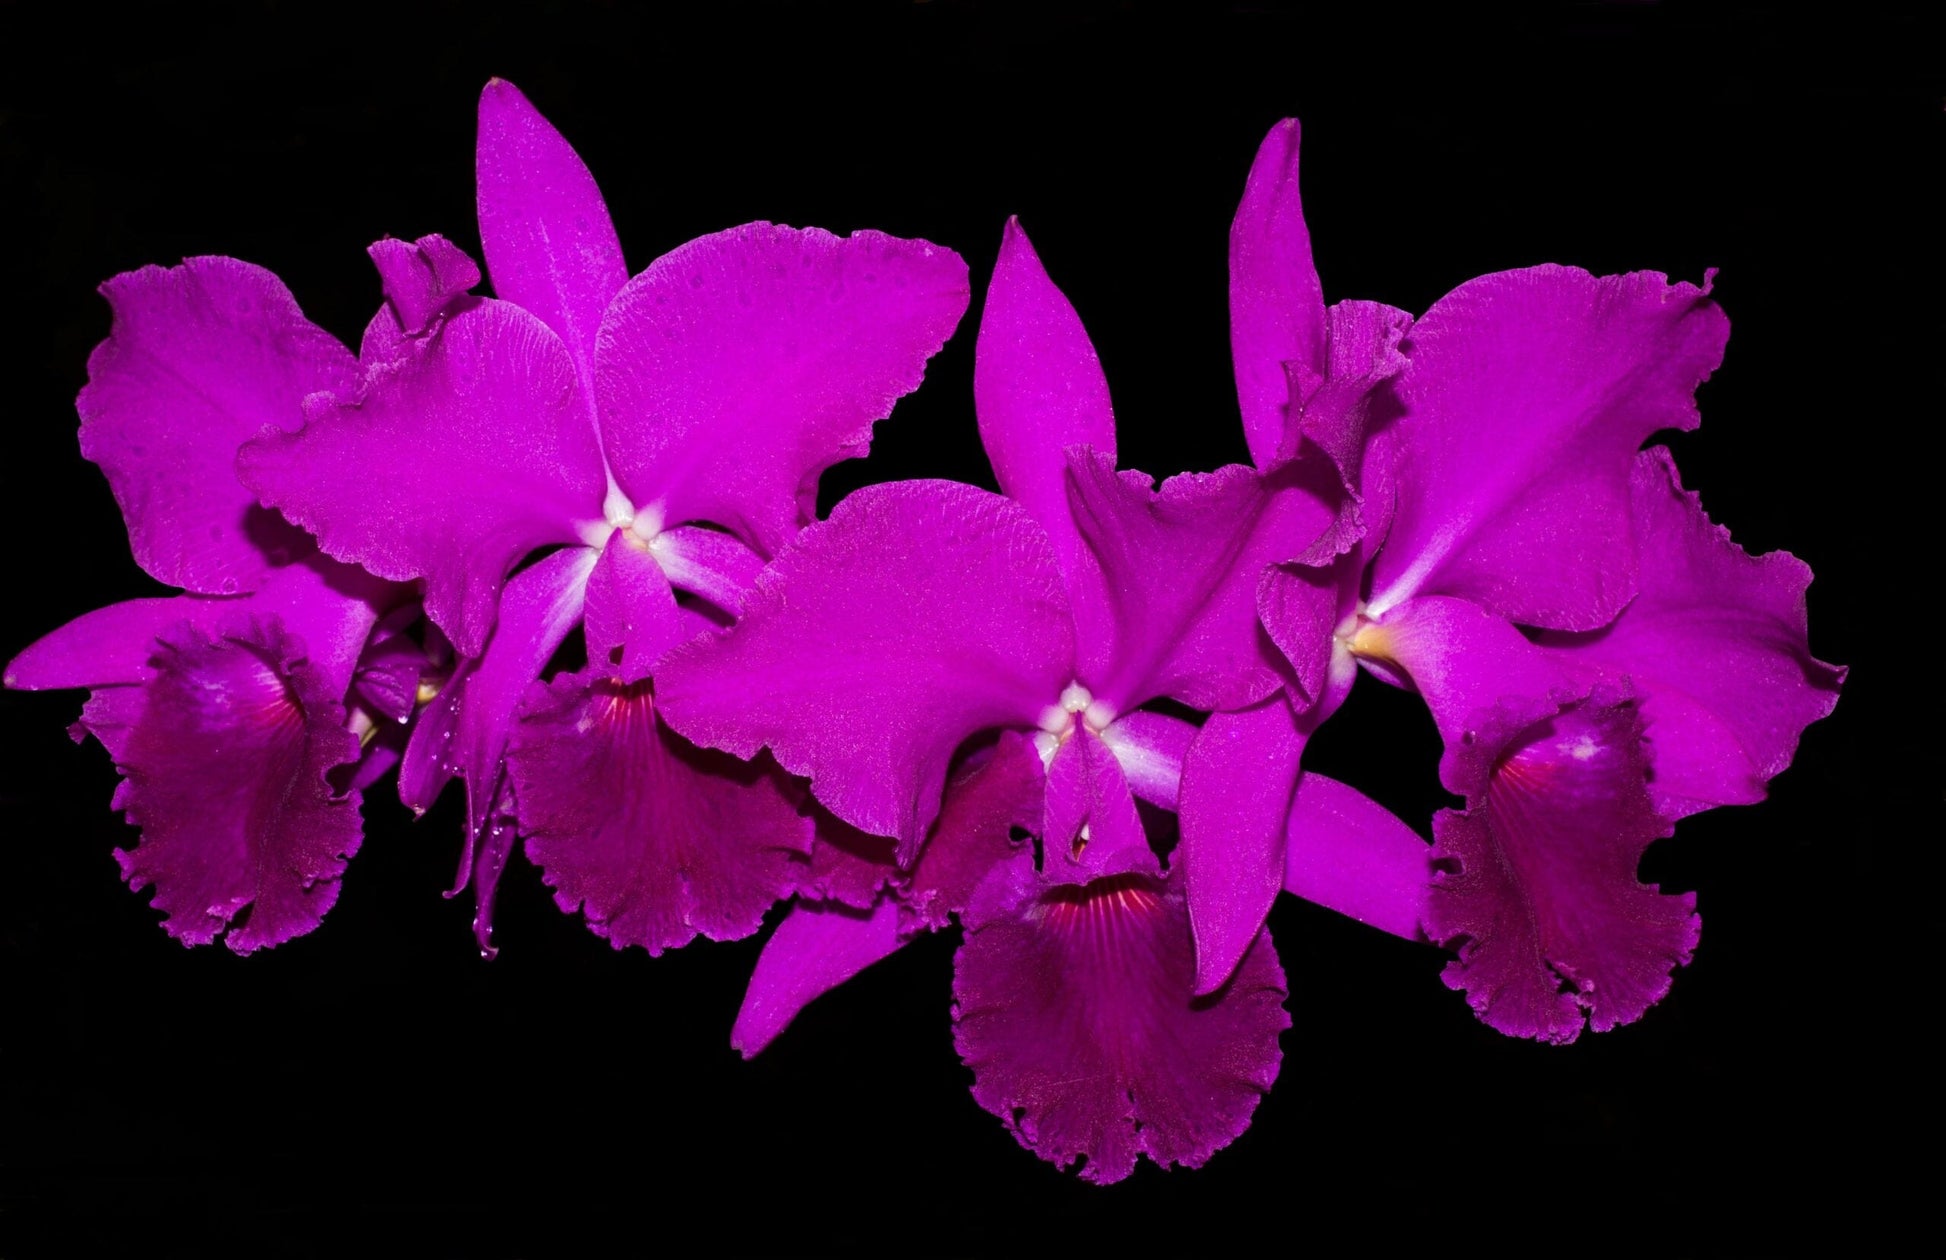 Cattleya jenmanii var. rubra Cattleya La Foresta Orchids 